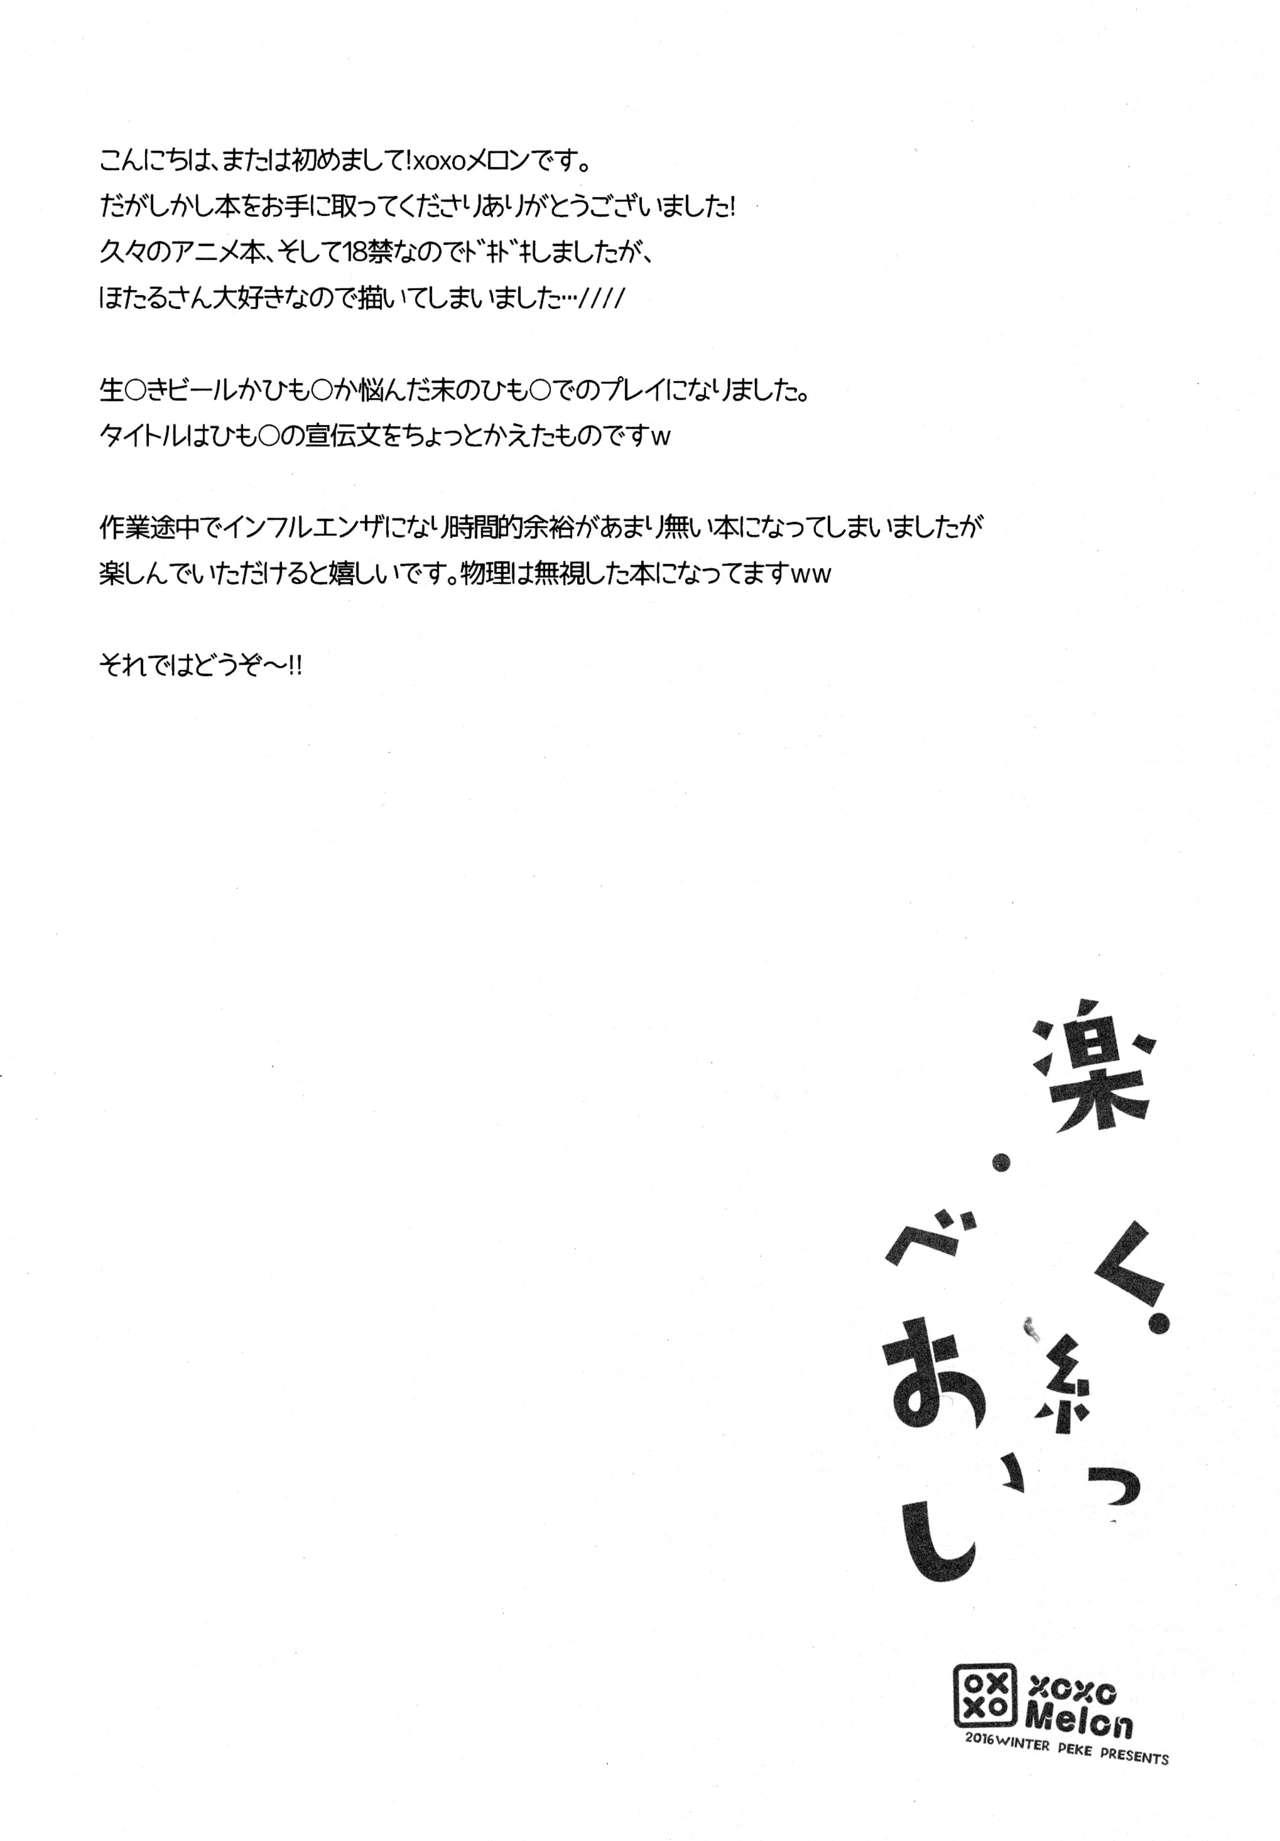 Culo Tanoshiku Shibatte Tabete Oishii - Dagashi kashi Boquete - Page 4